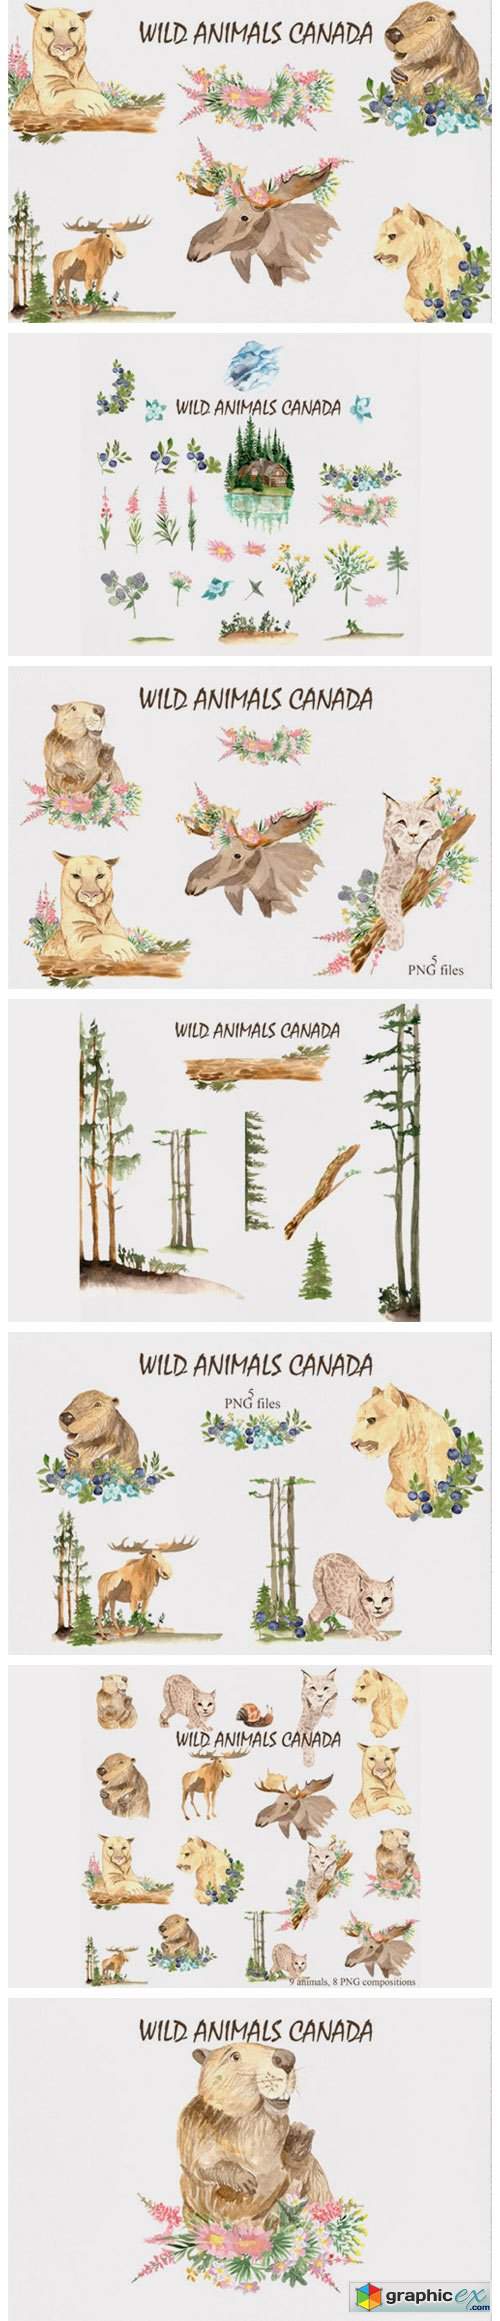  Wild Animals of Canada 